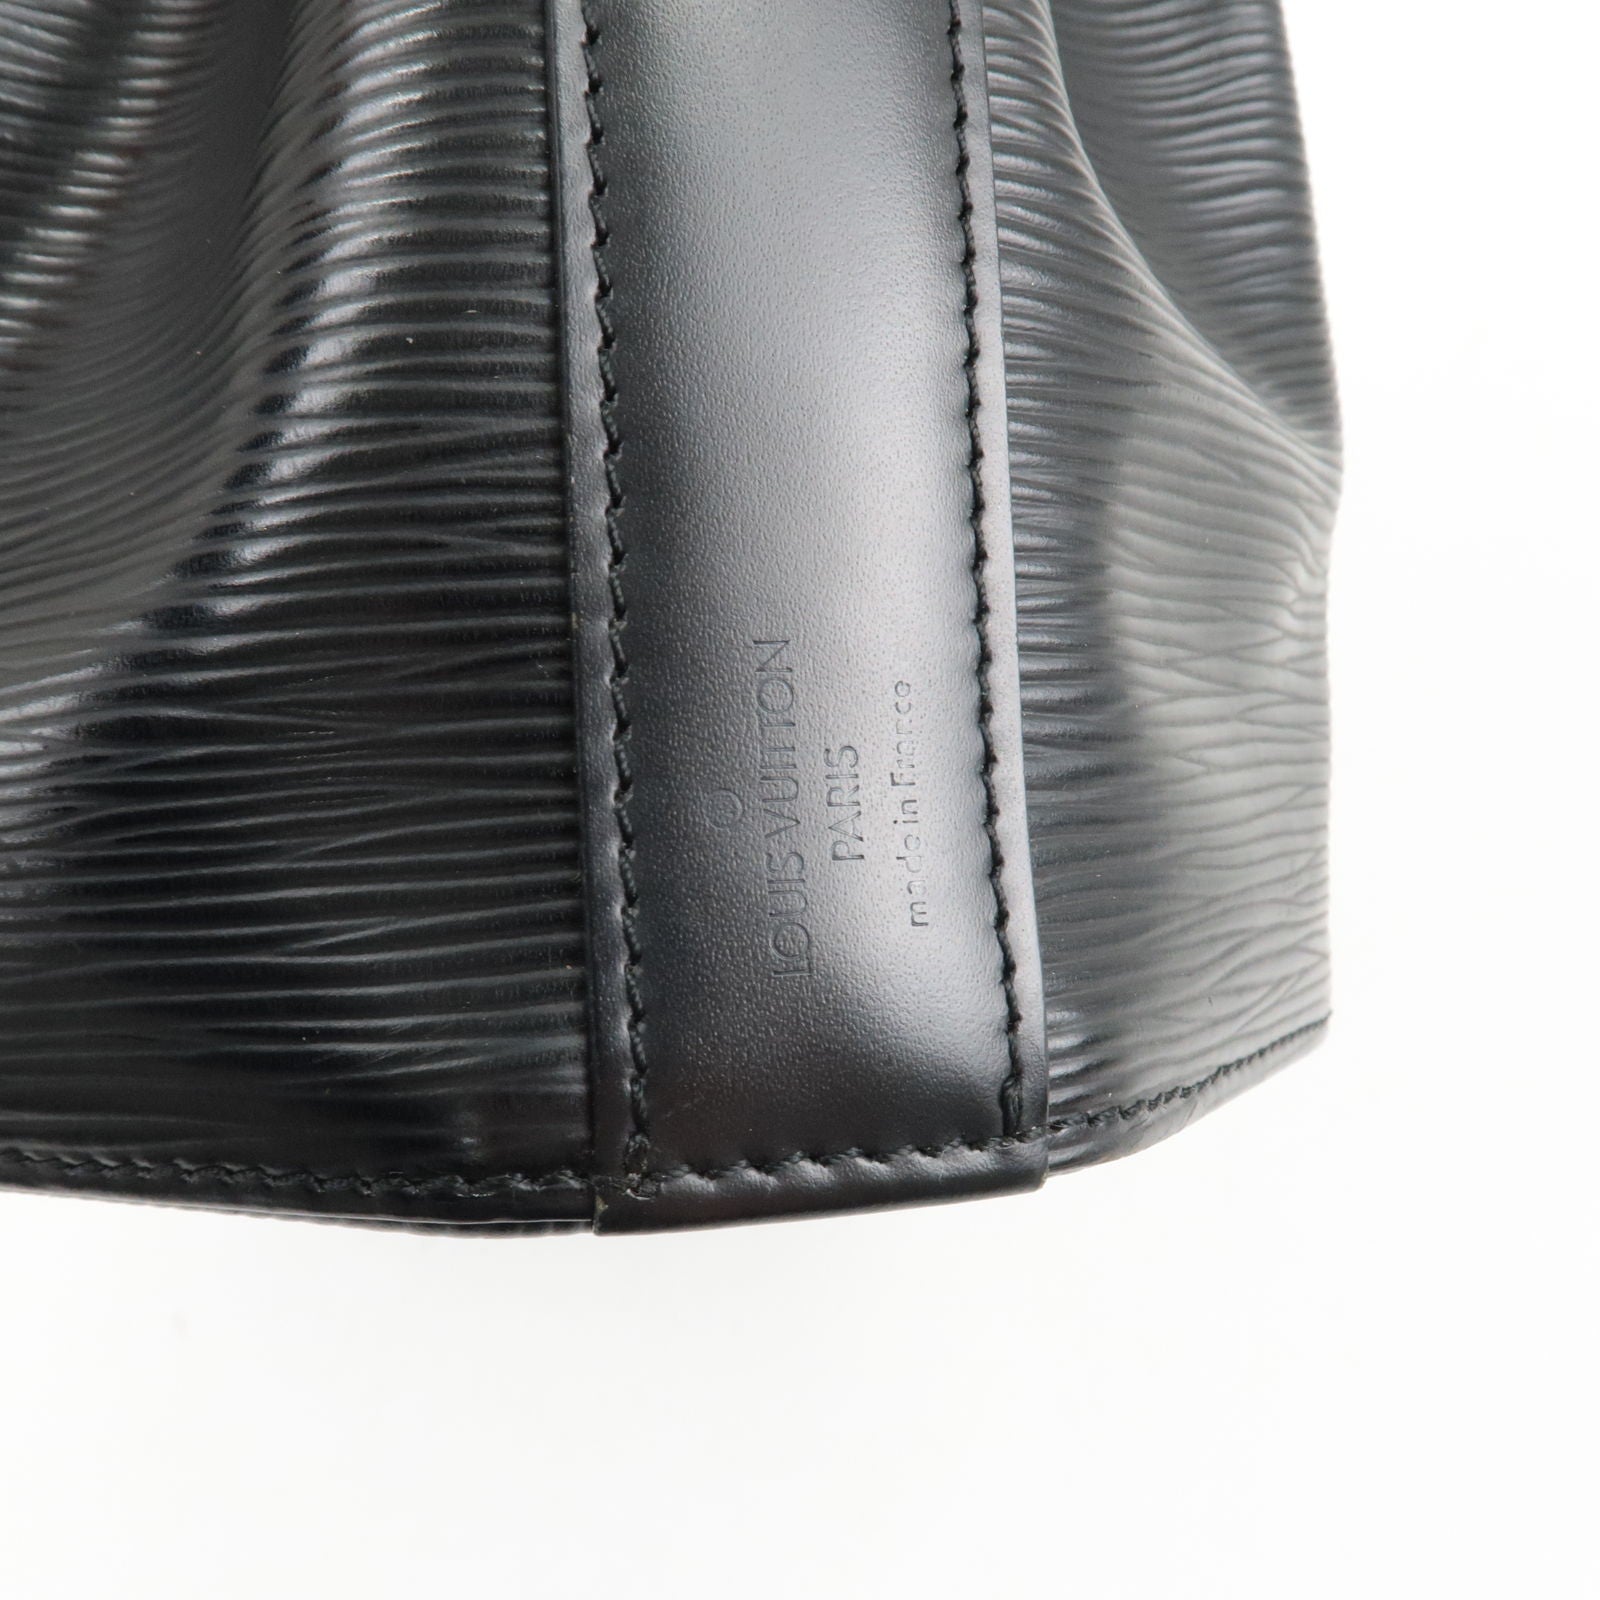 Louis-Vuitton-Epi-Sac-D'epaule-PM-Bucket-Bag-Noir-Black-M80157